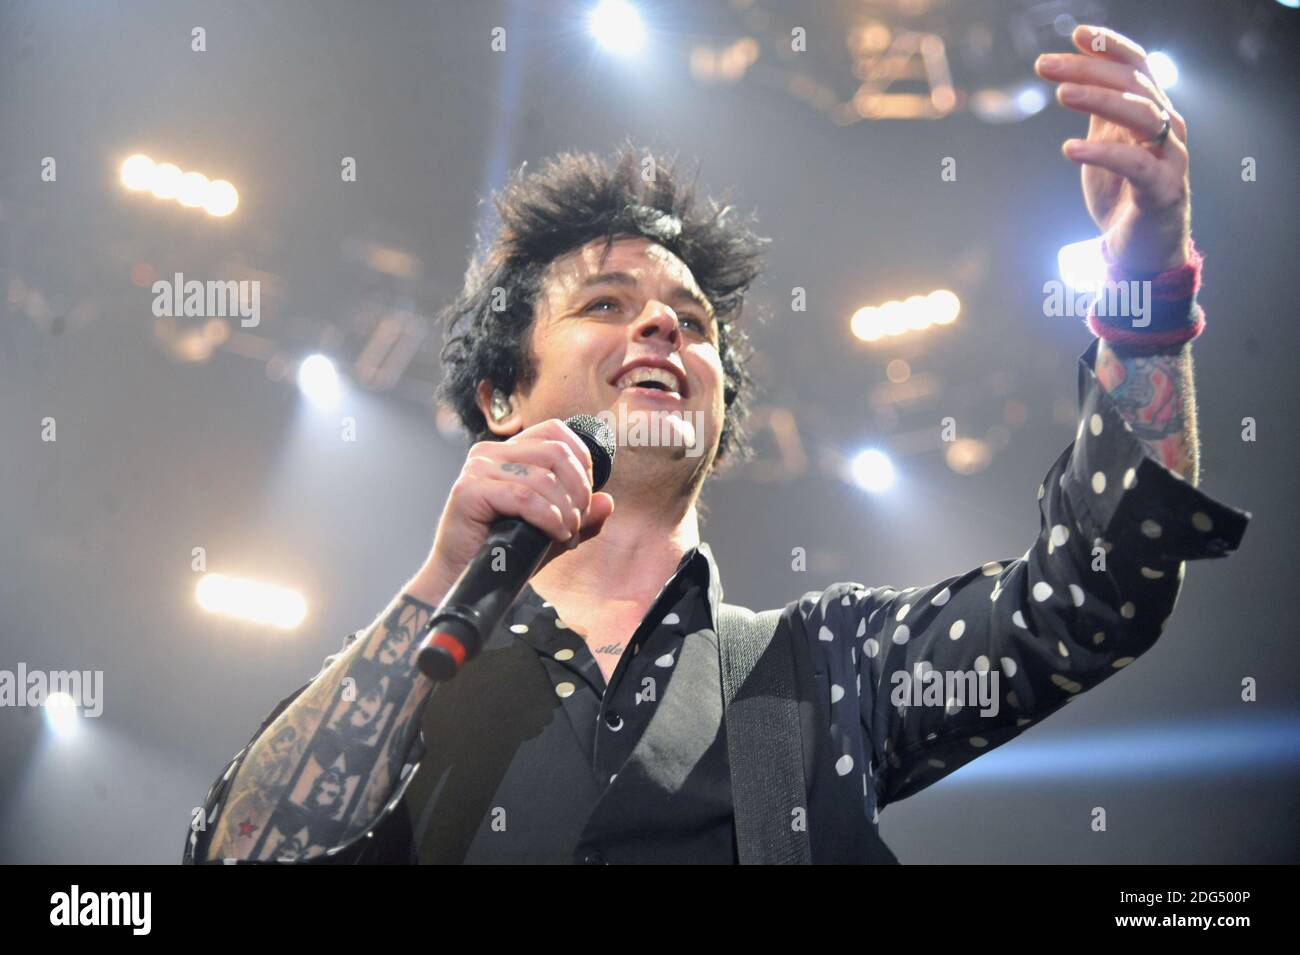 Die kalifornische Punkrock-Band Green Day (Billie Joe Amstrong) in der accorhotels Arena in Paris, Frankreich, am 3. Februar 2017. Foto von Yasmine Hammou/ABACAPRESS.COM03/02/2017 - Paris Stockfoto